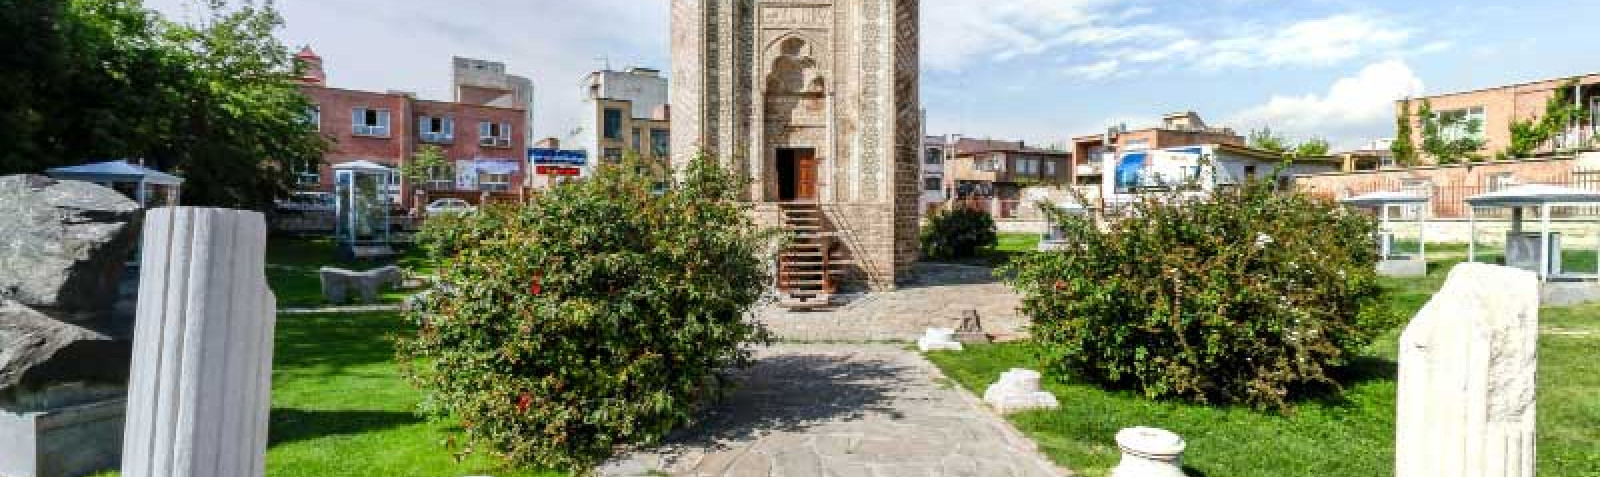 متحف الحجر النقائش في أورمية (مقاطعة أذربيجان الغربية)